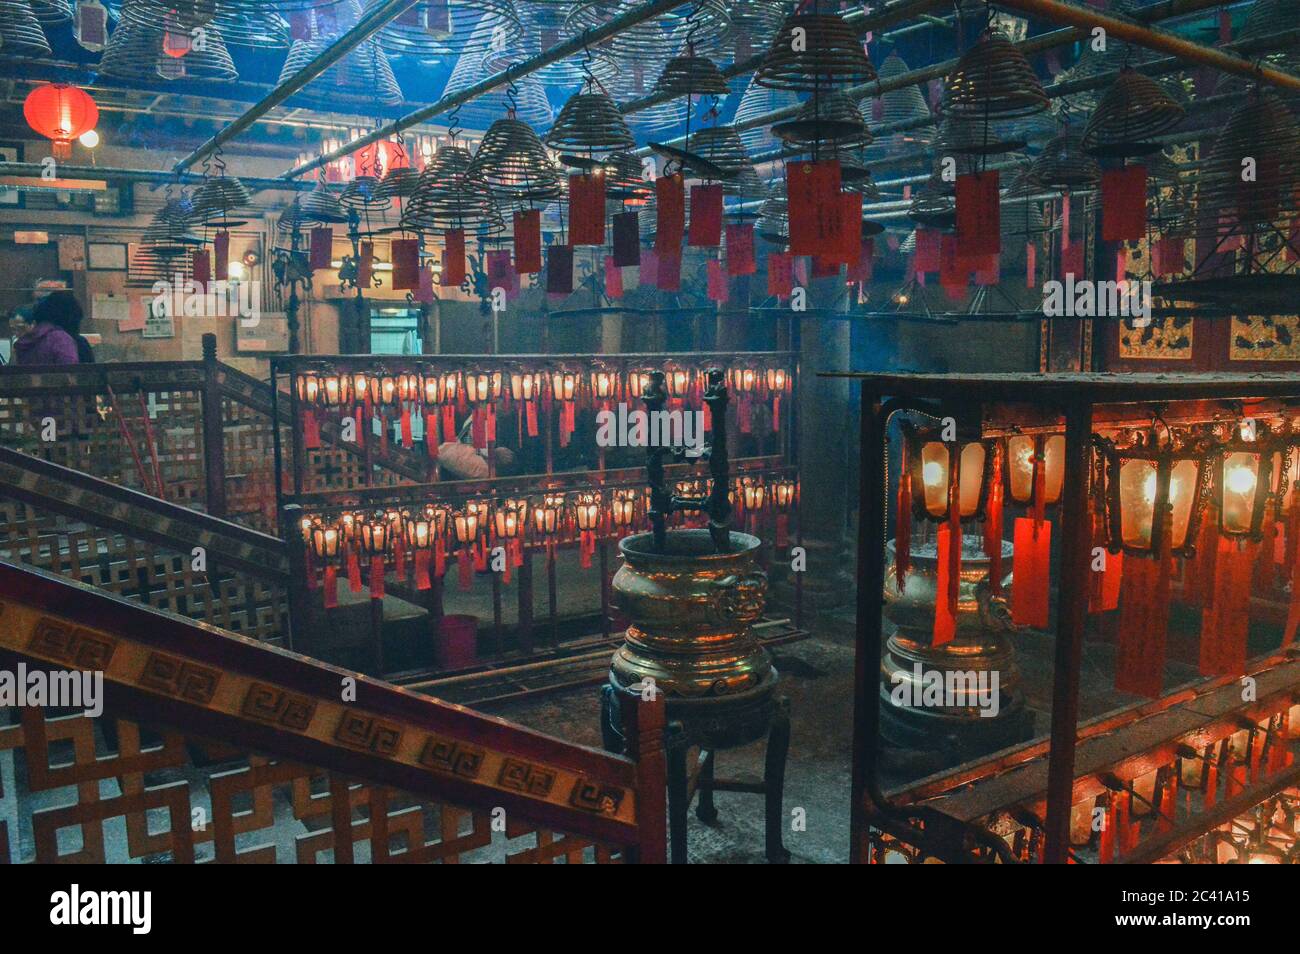 Man Mo Temple in Hong Kong with sun beams and incense Stock Photo